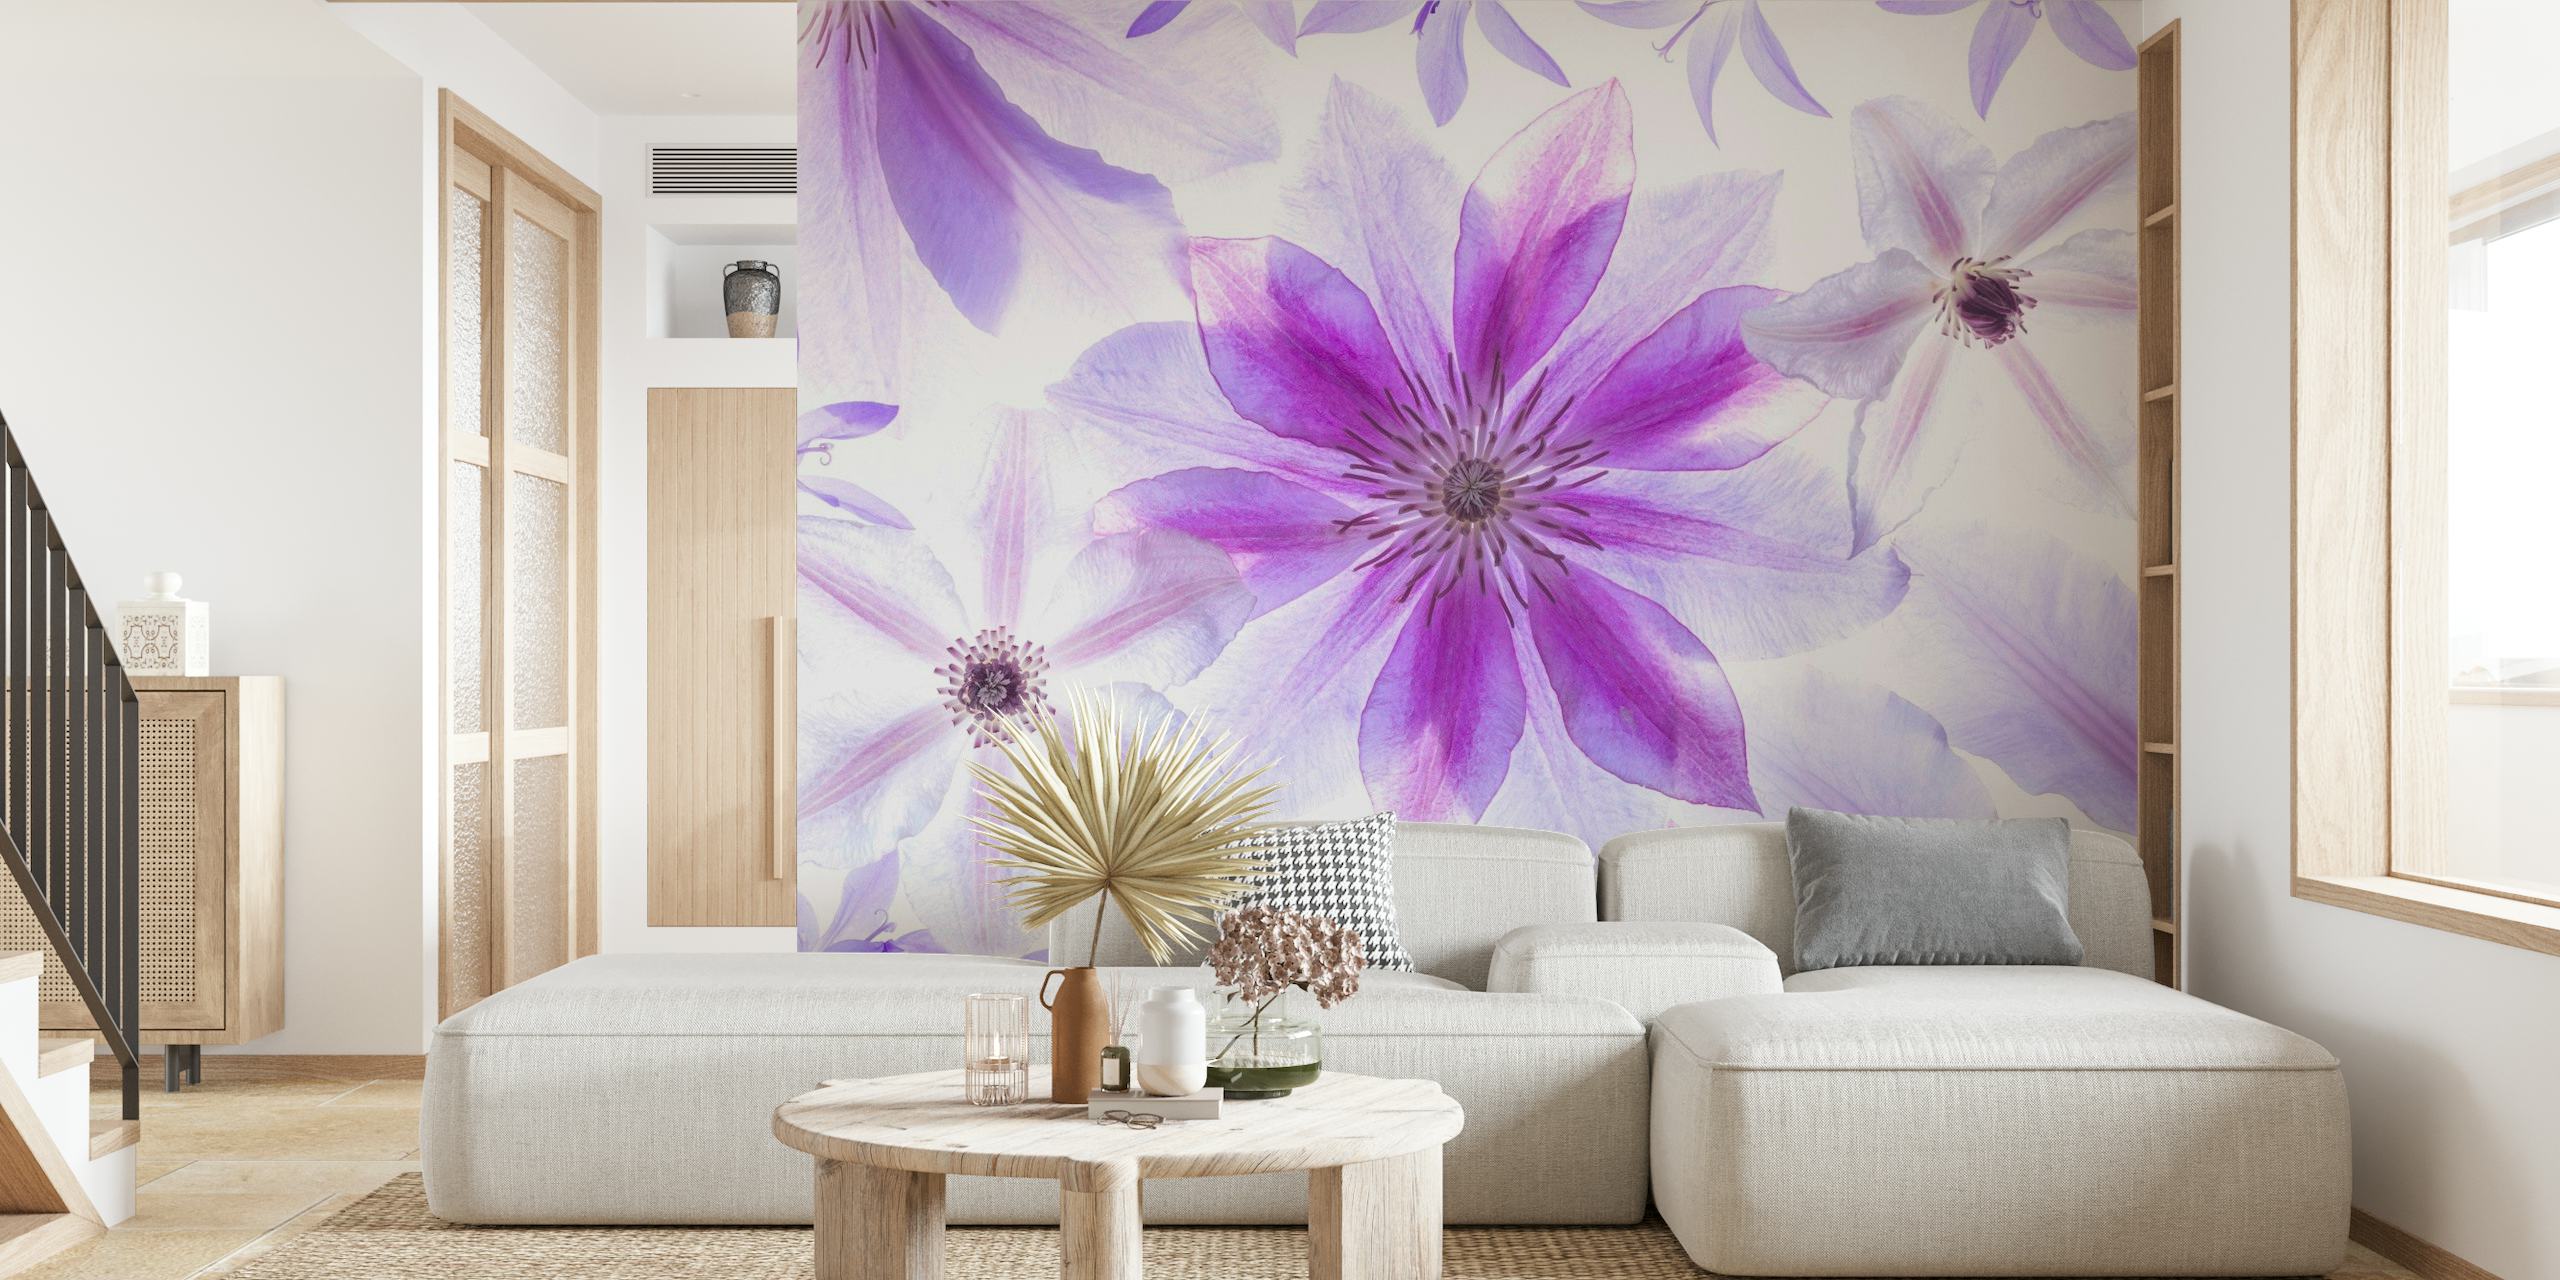 Fotomural de flores de clemátide moradas y blancas para decoración del hogar